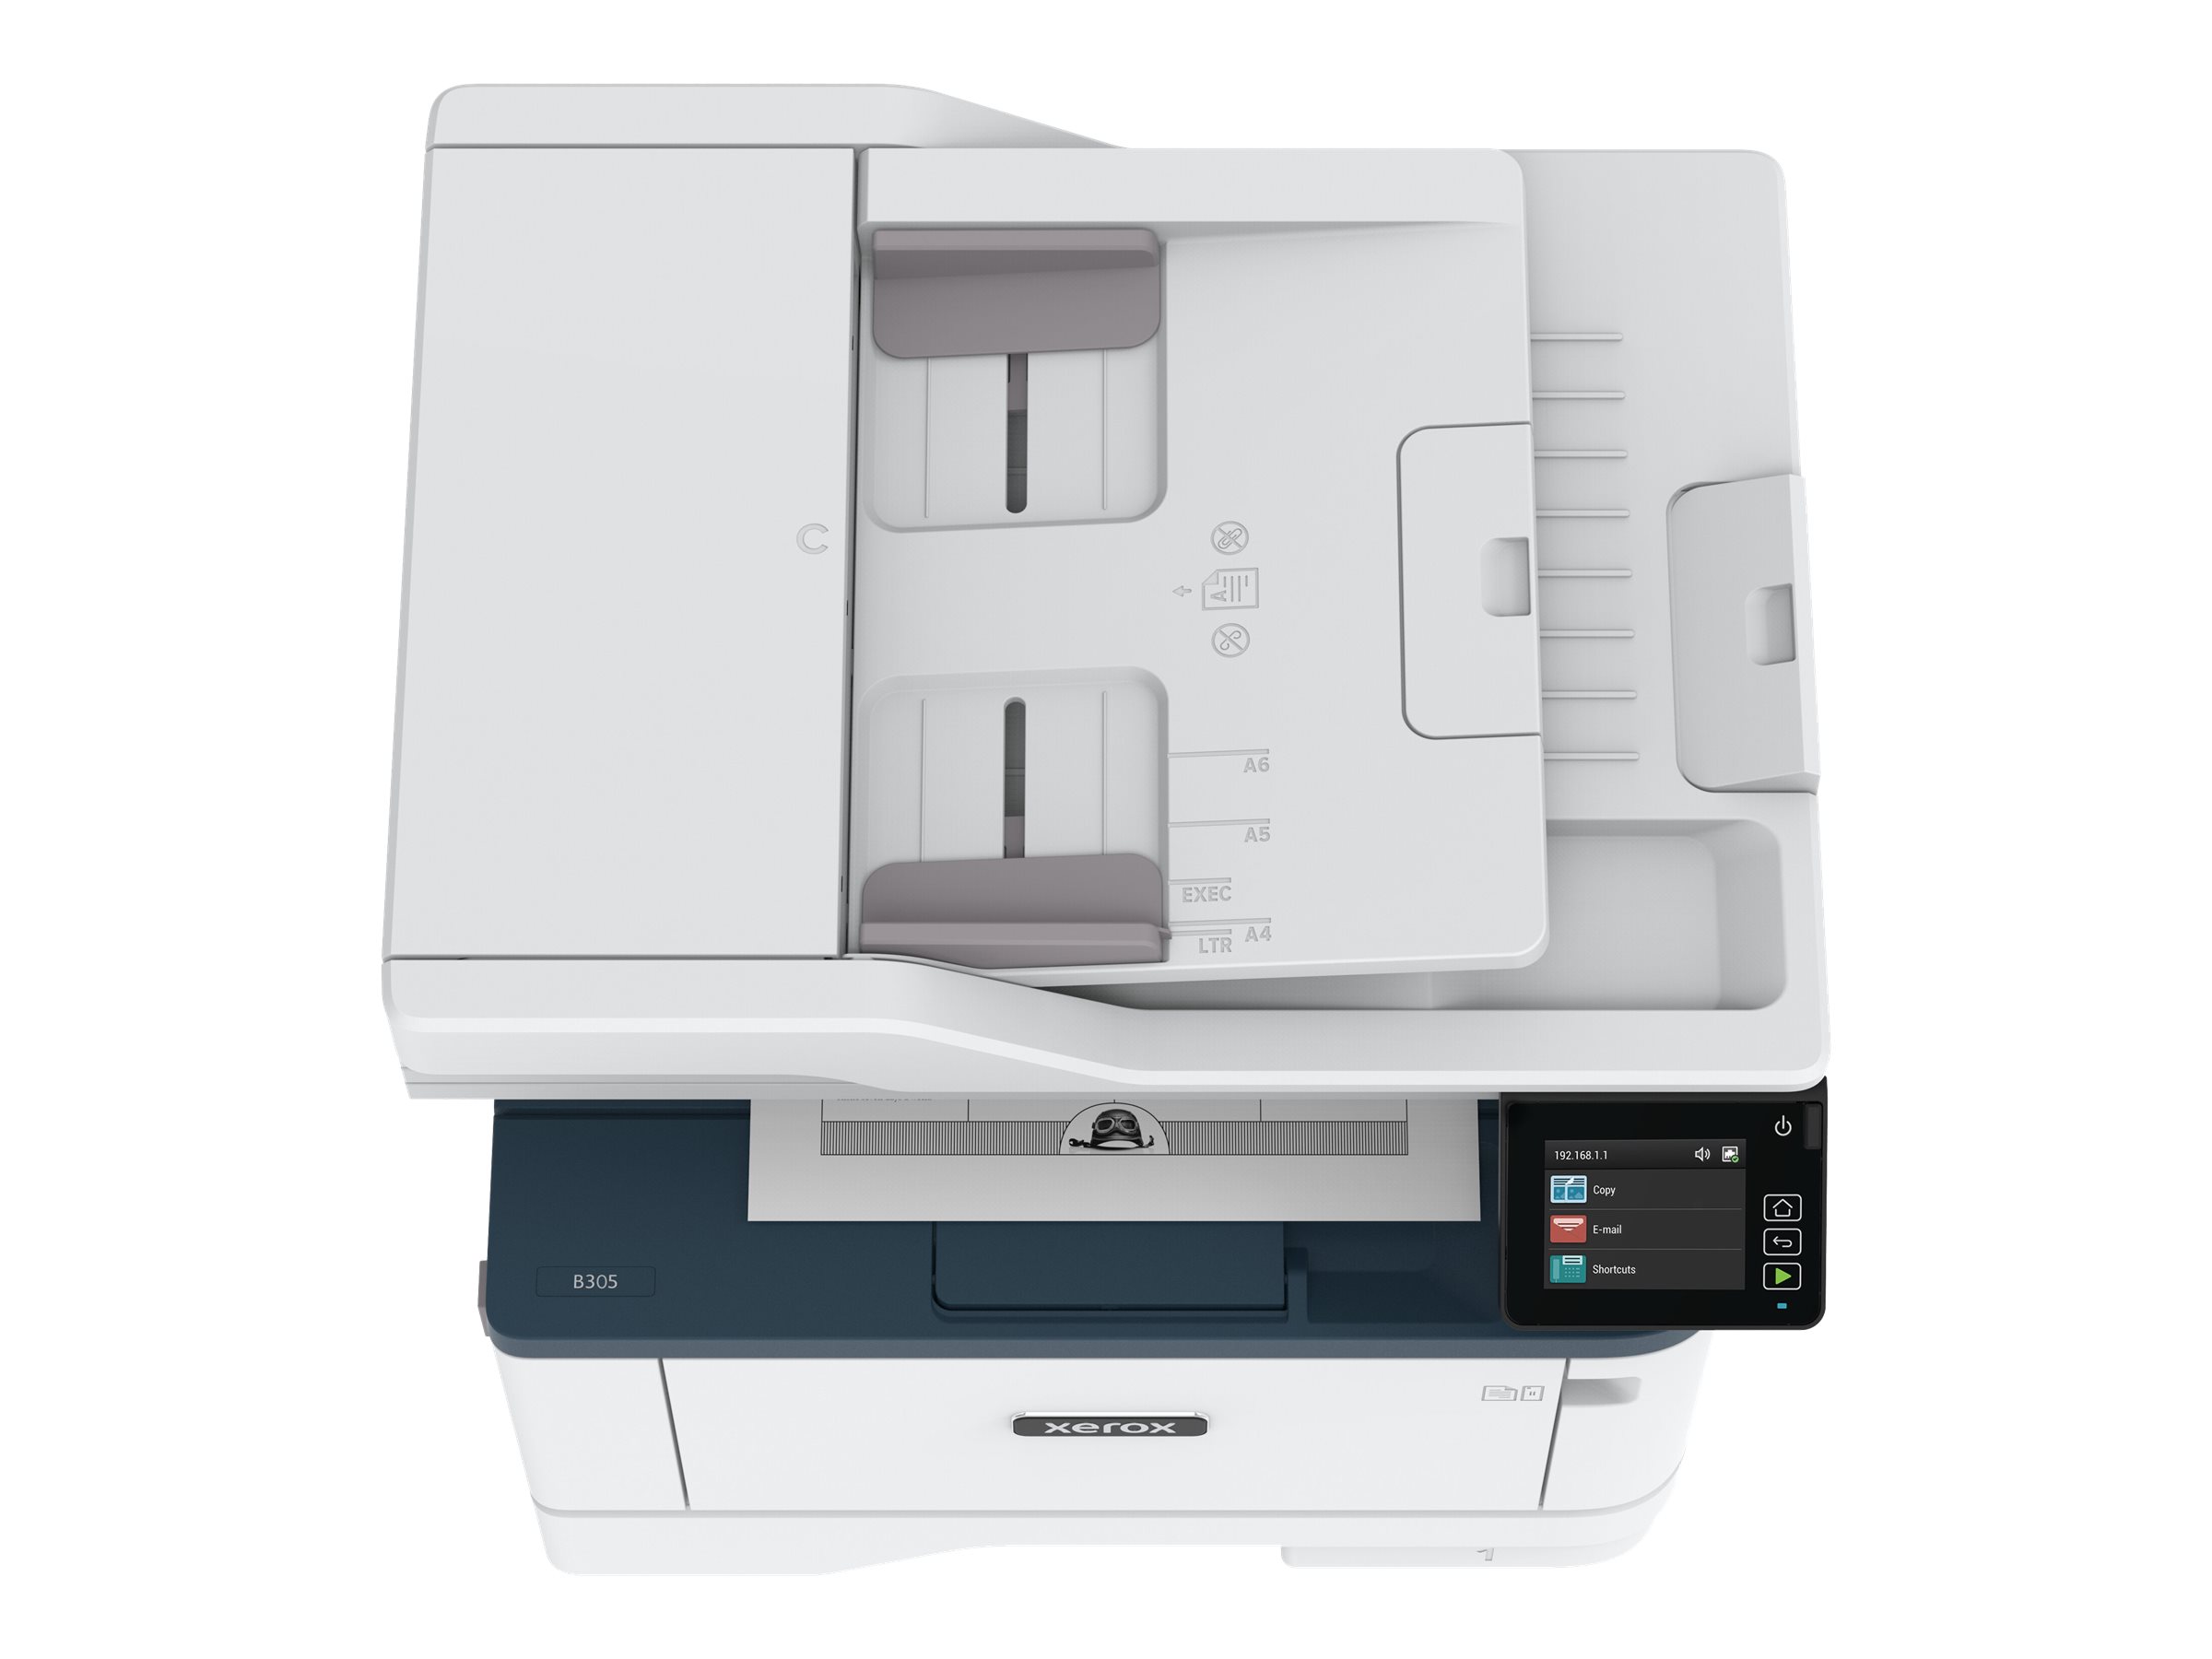 Xerox B305V_DNI - Imprimante multifonctions - Noir et blanc - laser - Legal (216 x 356 mm) (original) - A4/Legal (support) - jusqu'à 38 ppm (copie) - jusqu'à 38 ppm (impression) - 350 feuilles - USB 2.0, LAN, Wi-Fi(n) - B305V_DNI - Imprimantes multifonctions